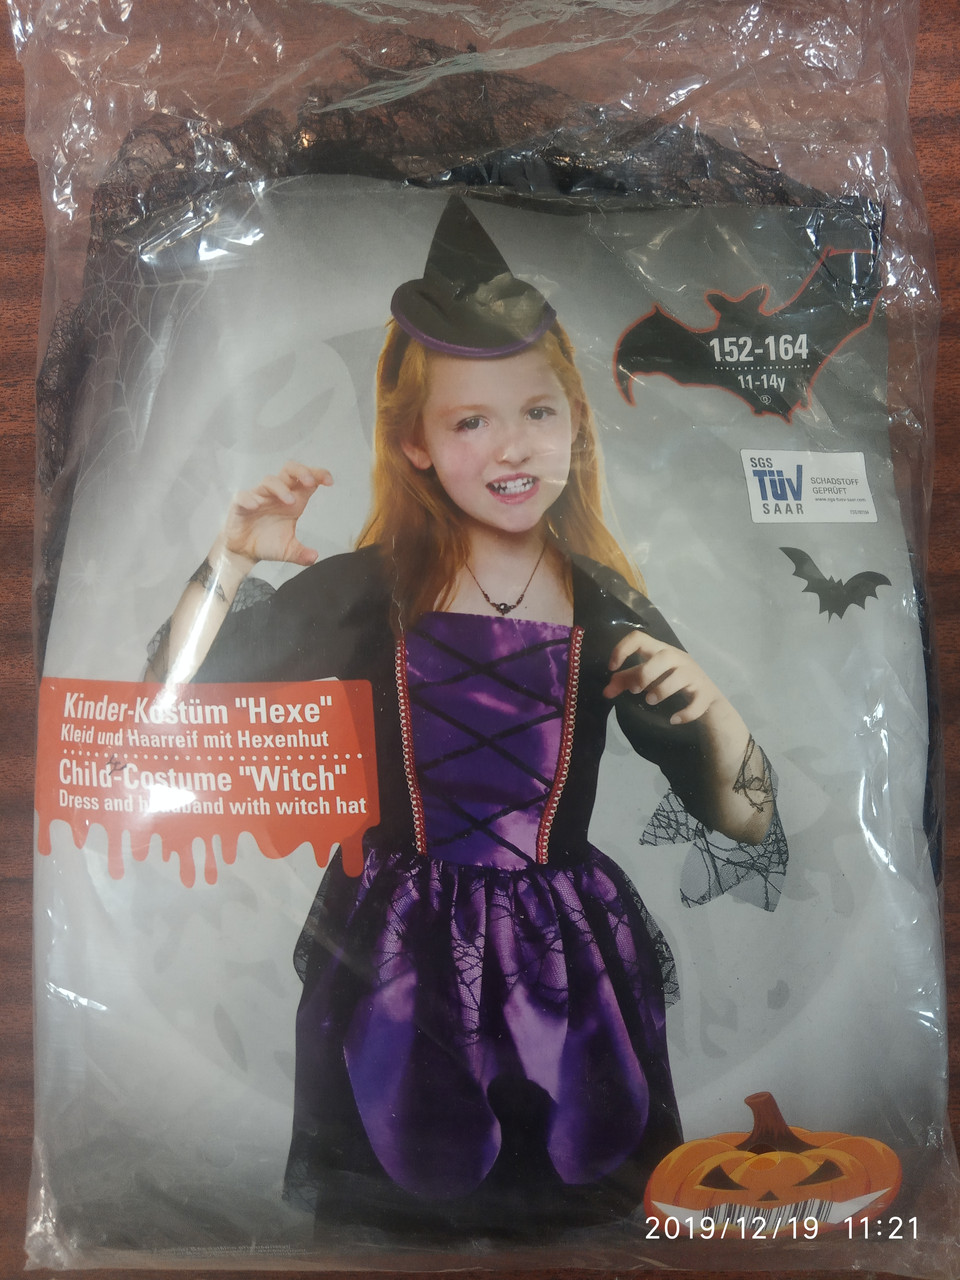 Verkleidung Halloween Kinder Frisch ÐÐ°ÑÐ½Ð°Ð²Ð°Ð ÑÐ½ÑÐ¹ Ð½Ð¾Ð²Ð¾Ð³Ð¾Ð´Ð½Ð¸Ð¹ ÐÐ¾ÑÑÑÐ¼ Ð²ÐµÐ´ÑÐ¼Ñ ÐºÐ¾Ð Ð´ÑÐ½ÑÐ¸ Halloween